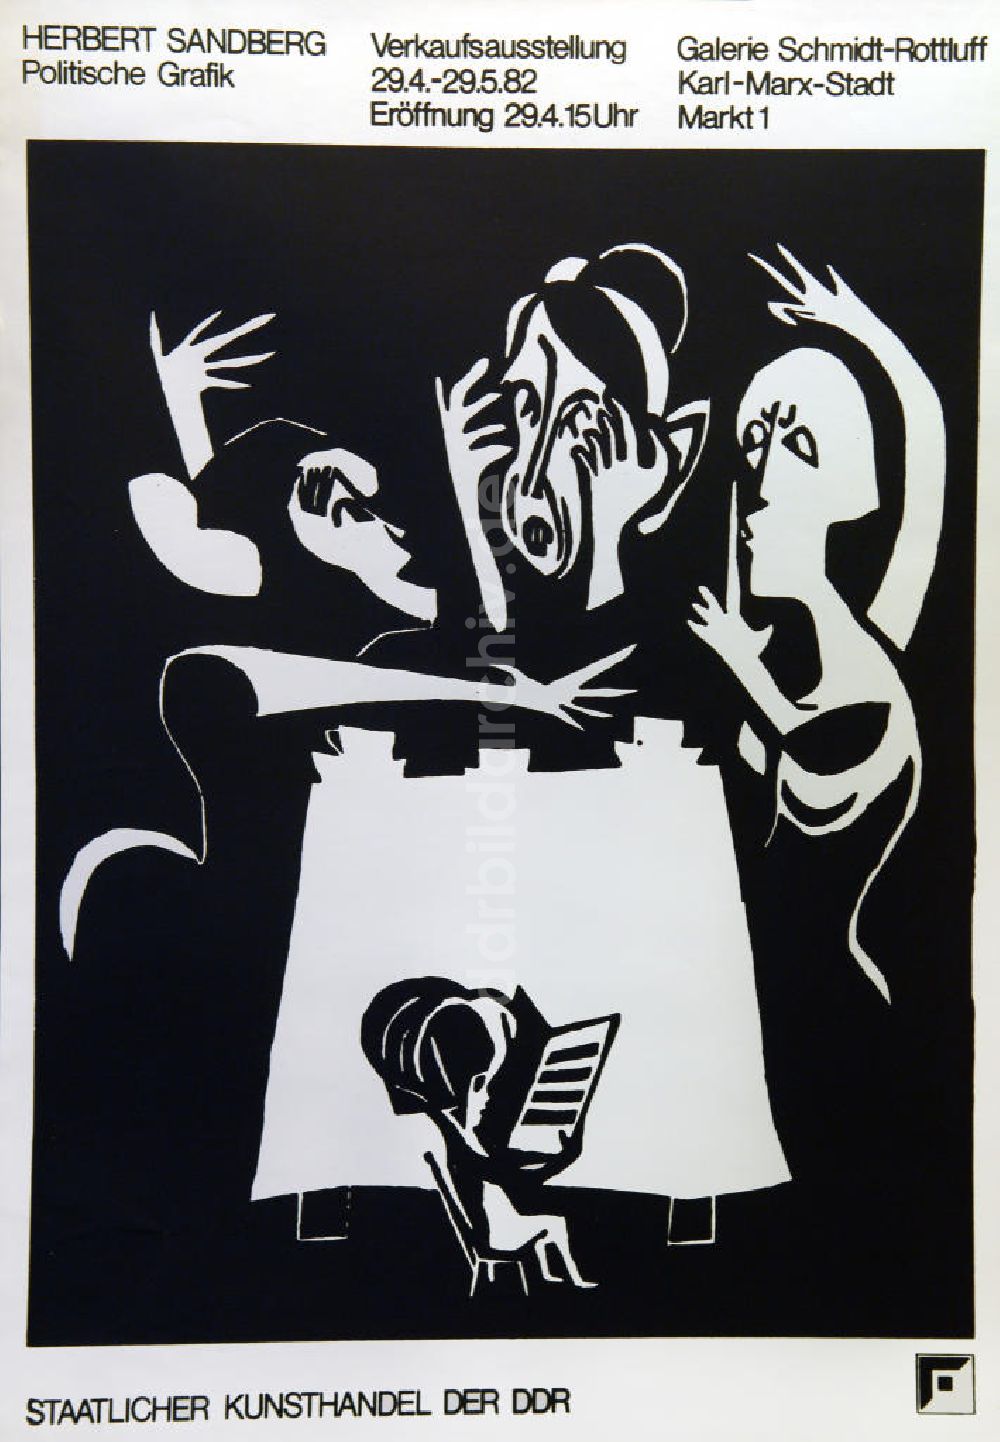 Berlin: Plakat von der Ausstellung Herbert Sandberg, politische Grafik aus dem Jahr 1982